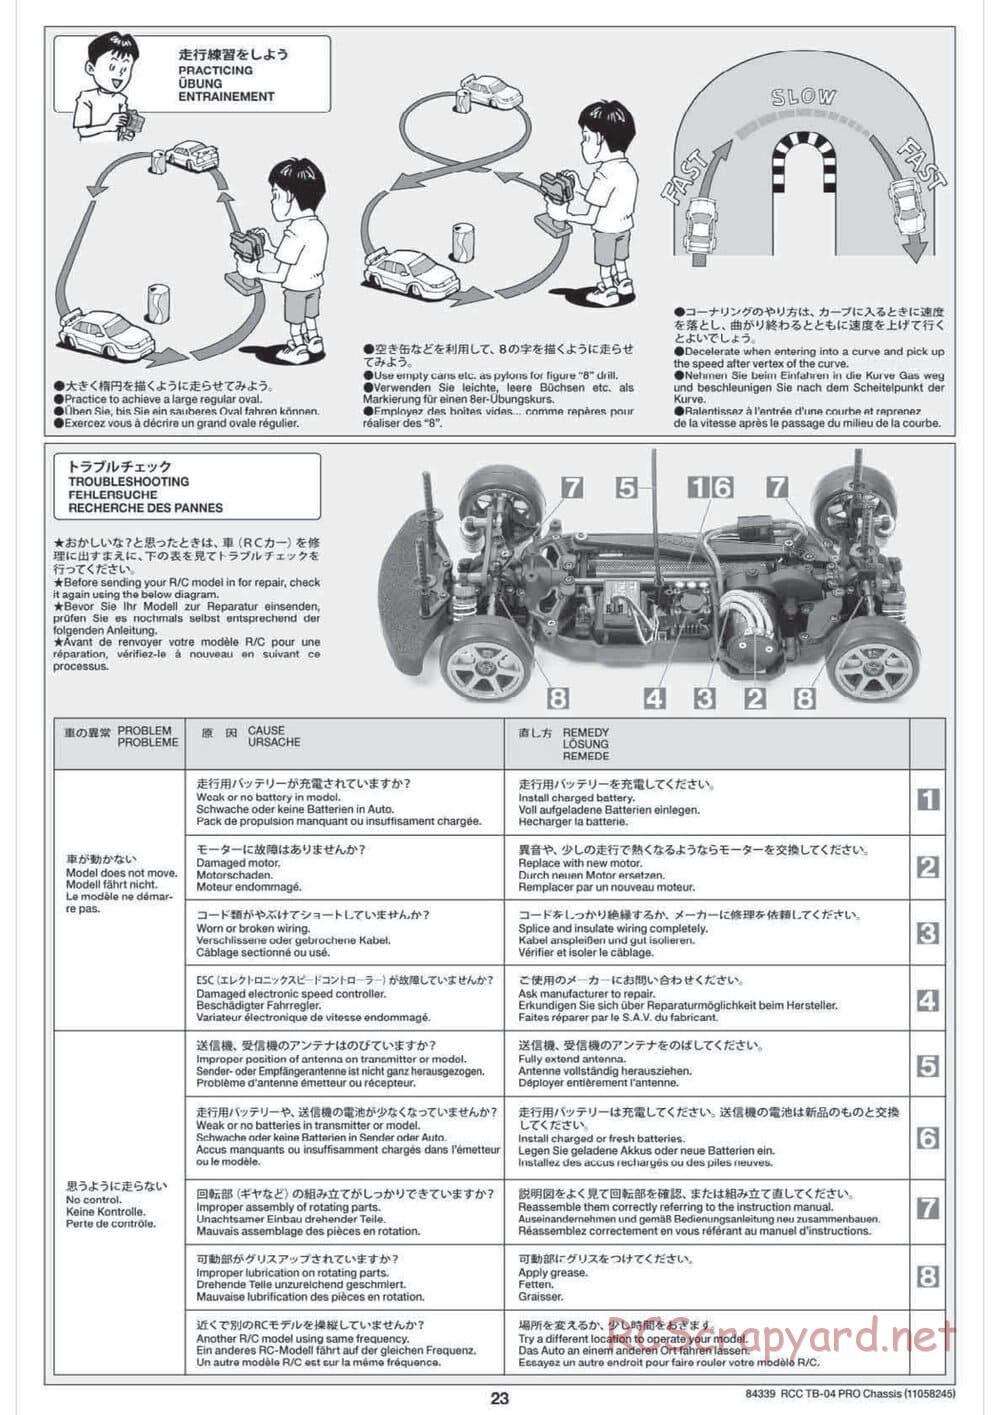 Tamiya - TB-04 Pro Chassis - Manual - Page 23